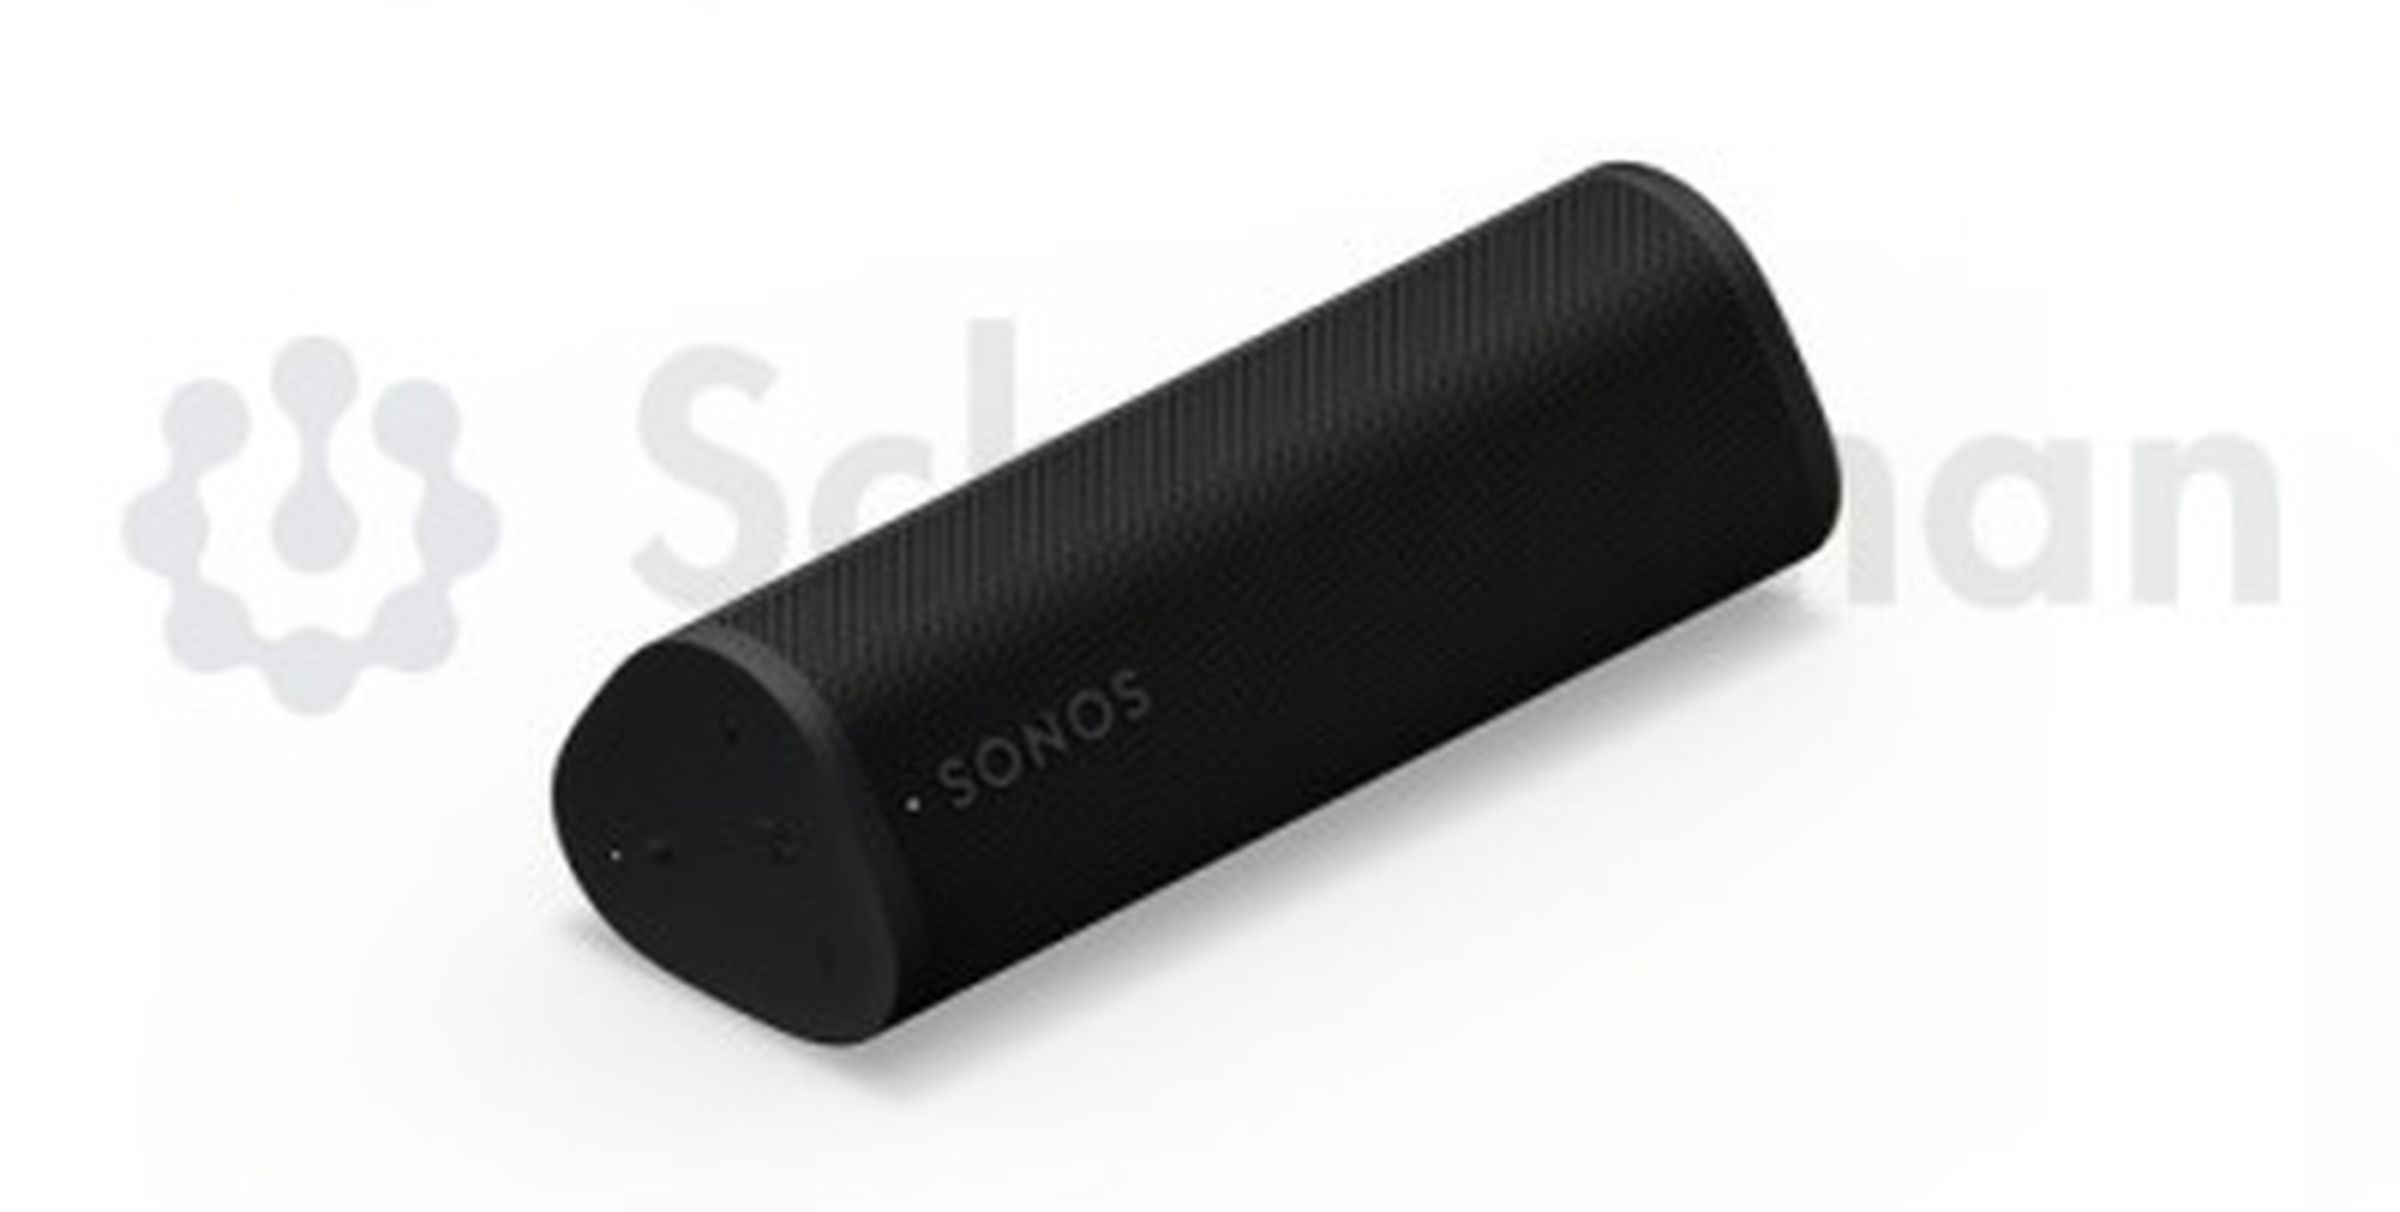 An image of the Sonos Roam 2 speaker.